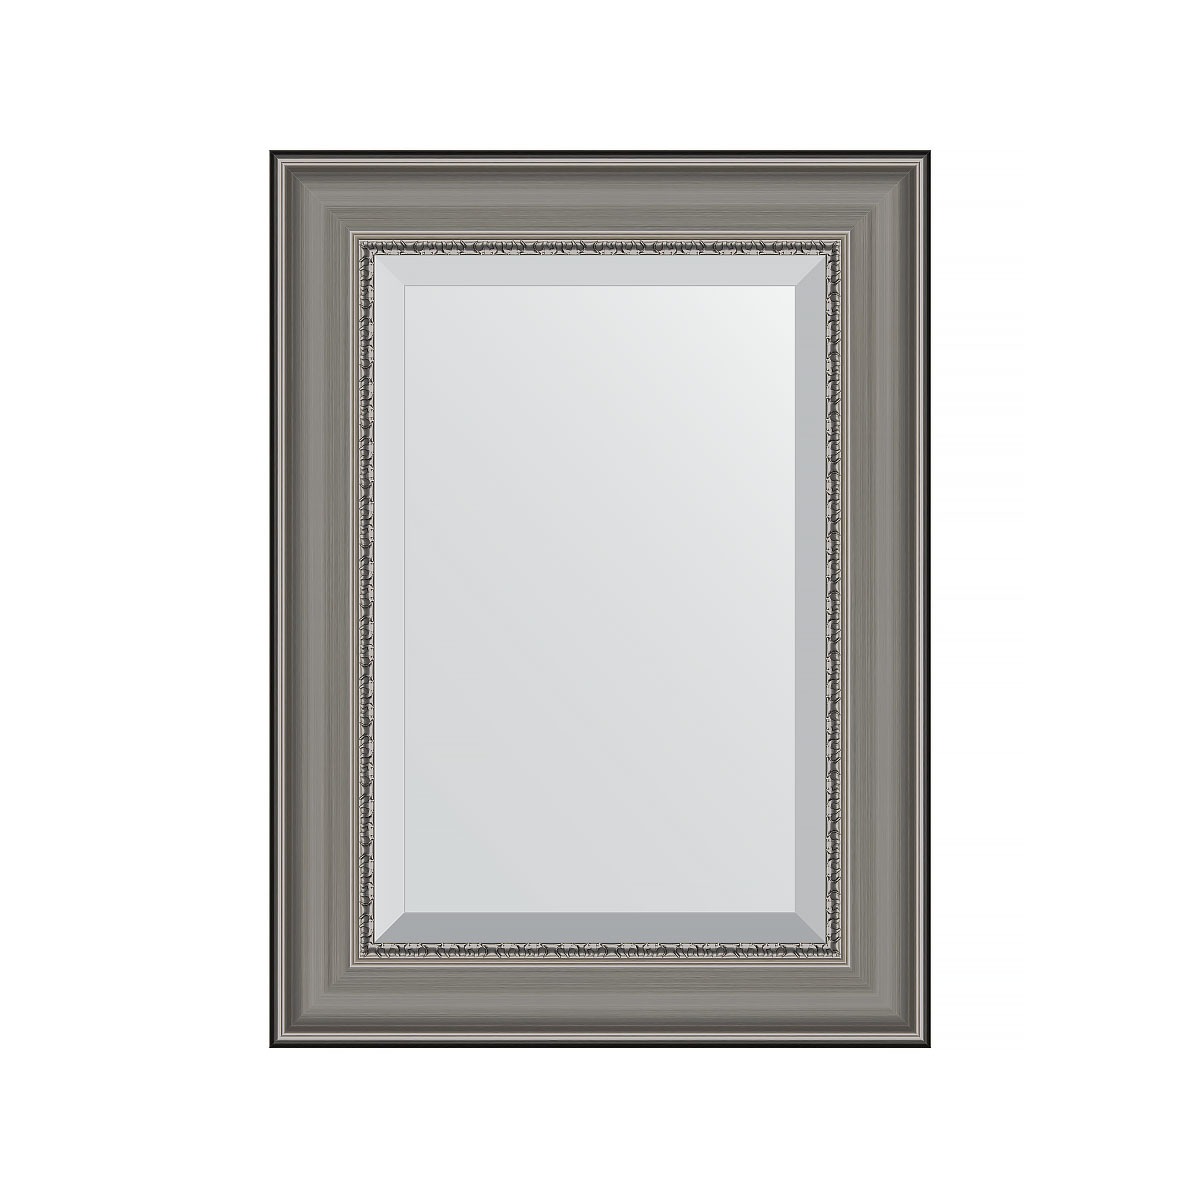 Зеркало с фацетом в багетной раме Evoform хамелеон 88 мм 56х76 см зеркало элегант 60 110 см в раме из зеркальной мозаики для ванной